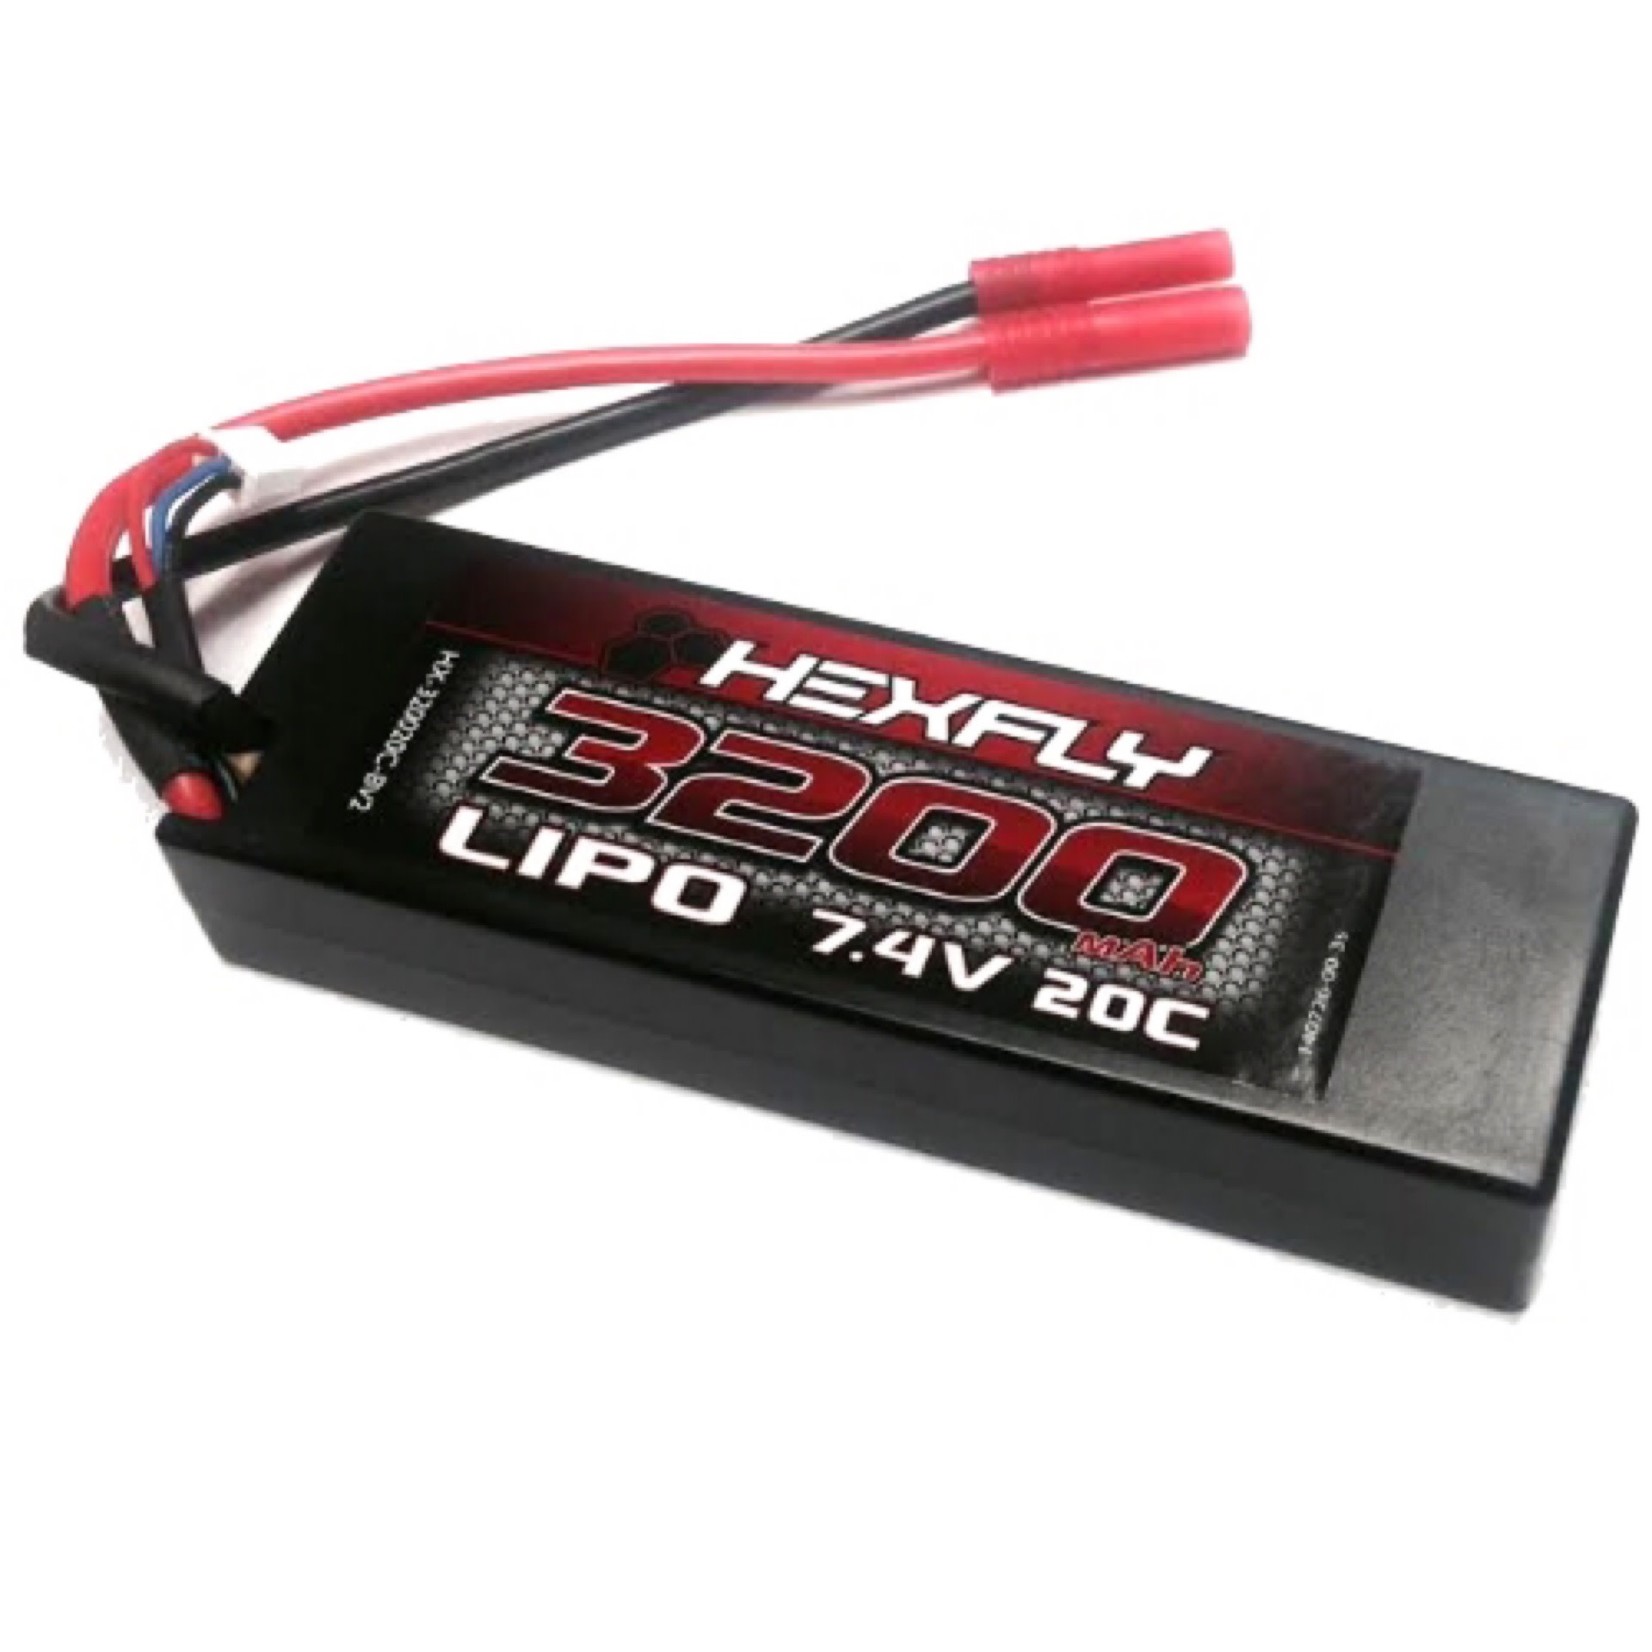 Redcat Racing RedCat Hexfly 2S 20C LiPo Battery Pack w/Banana Plug (7.4V/3200mAh) #HX-320020C-BV2